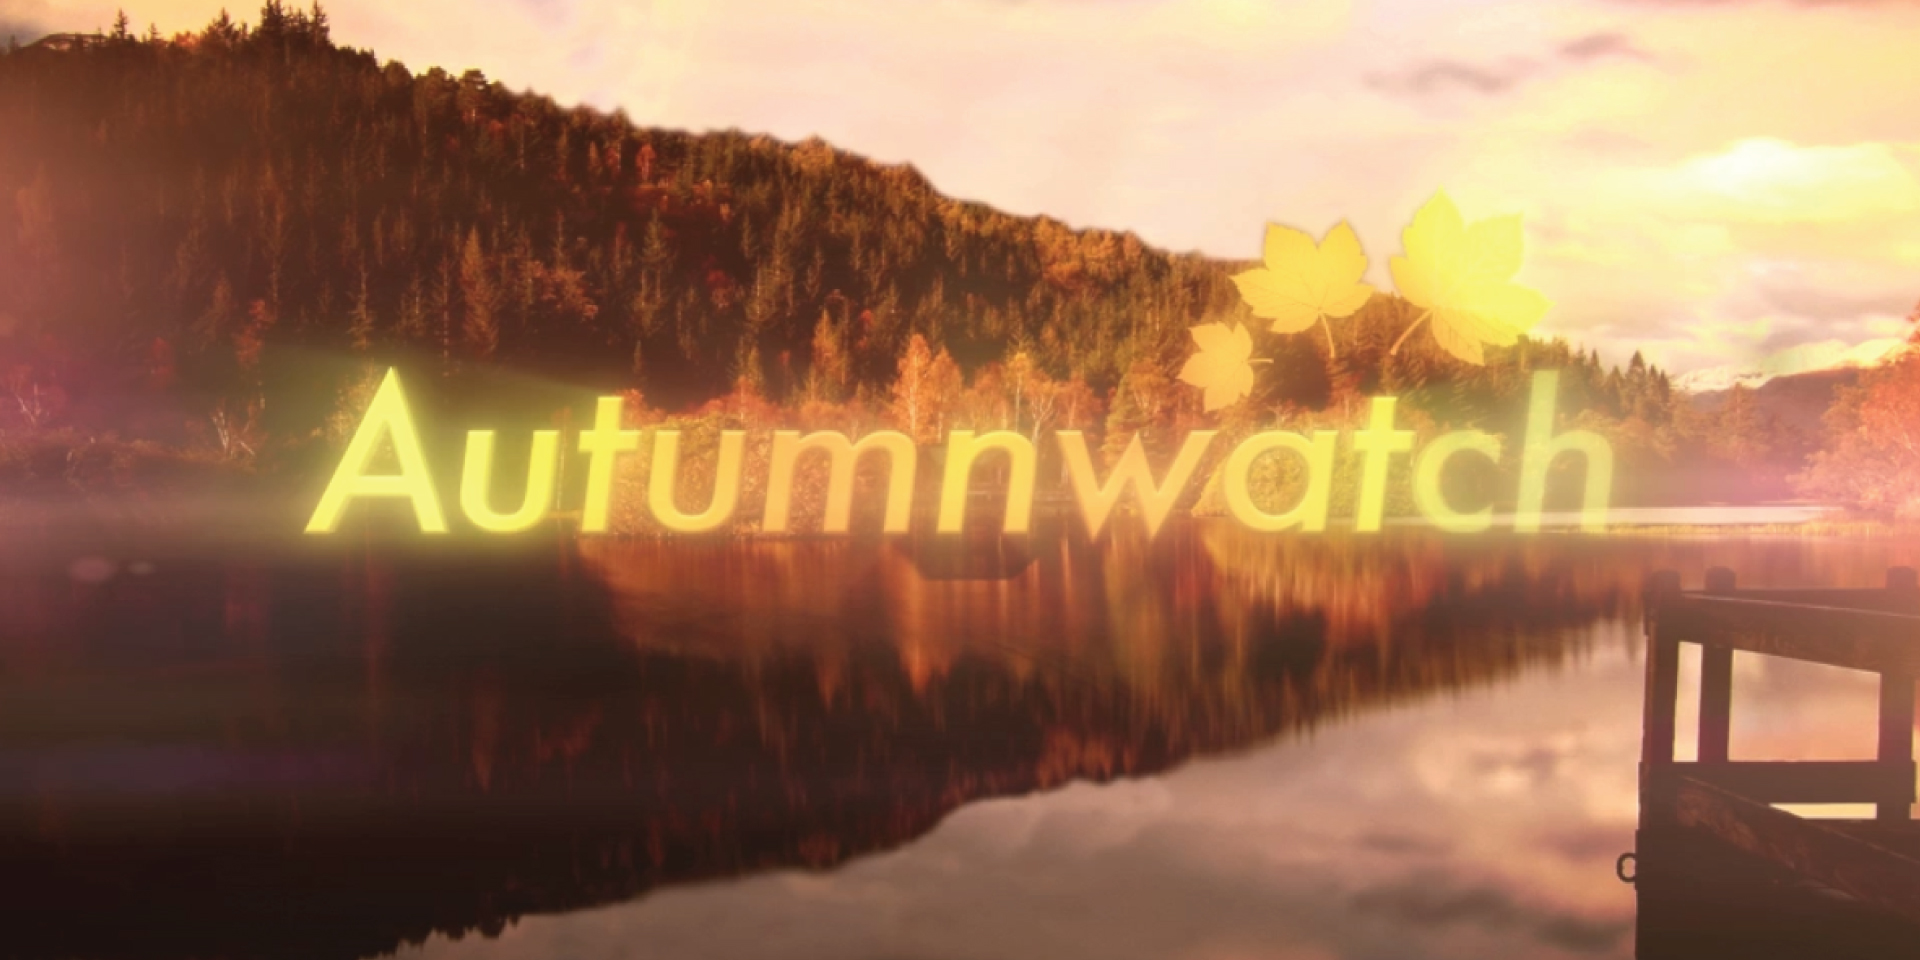 BBC Autumnwatch title sequence design